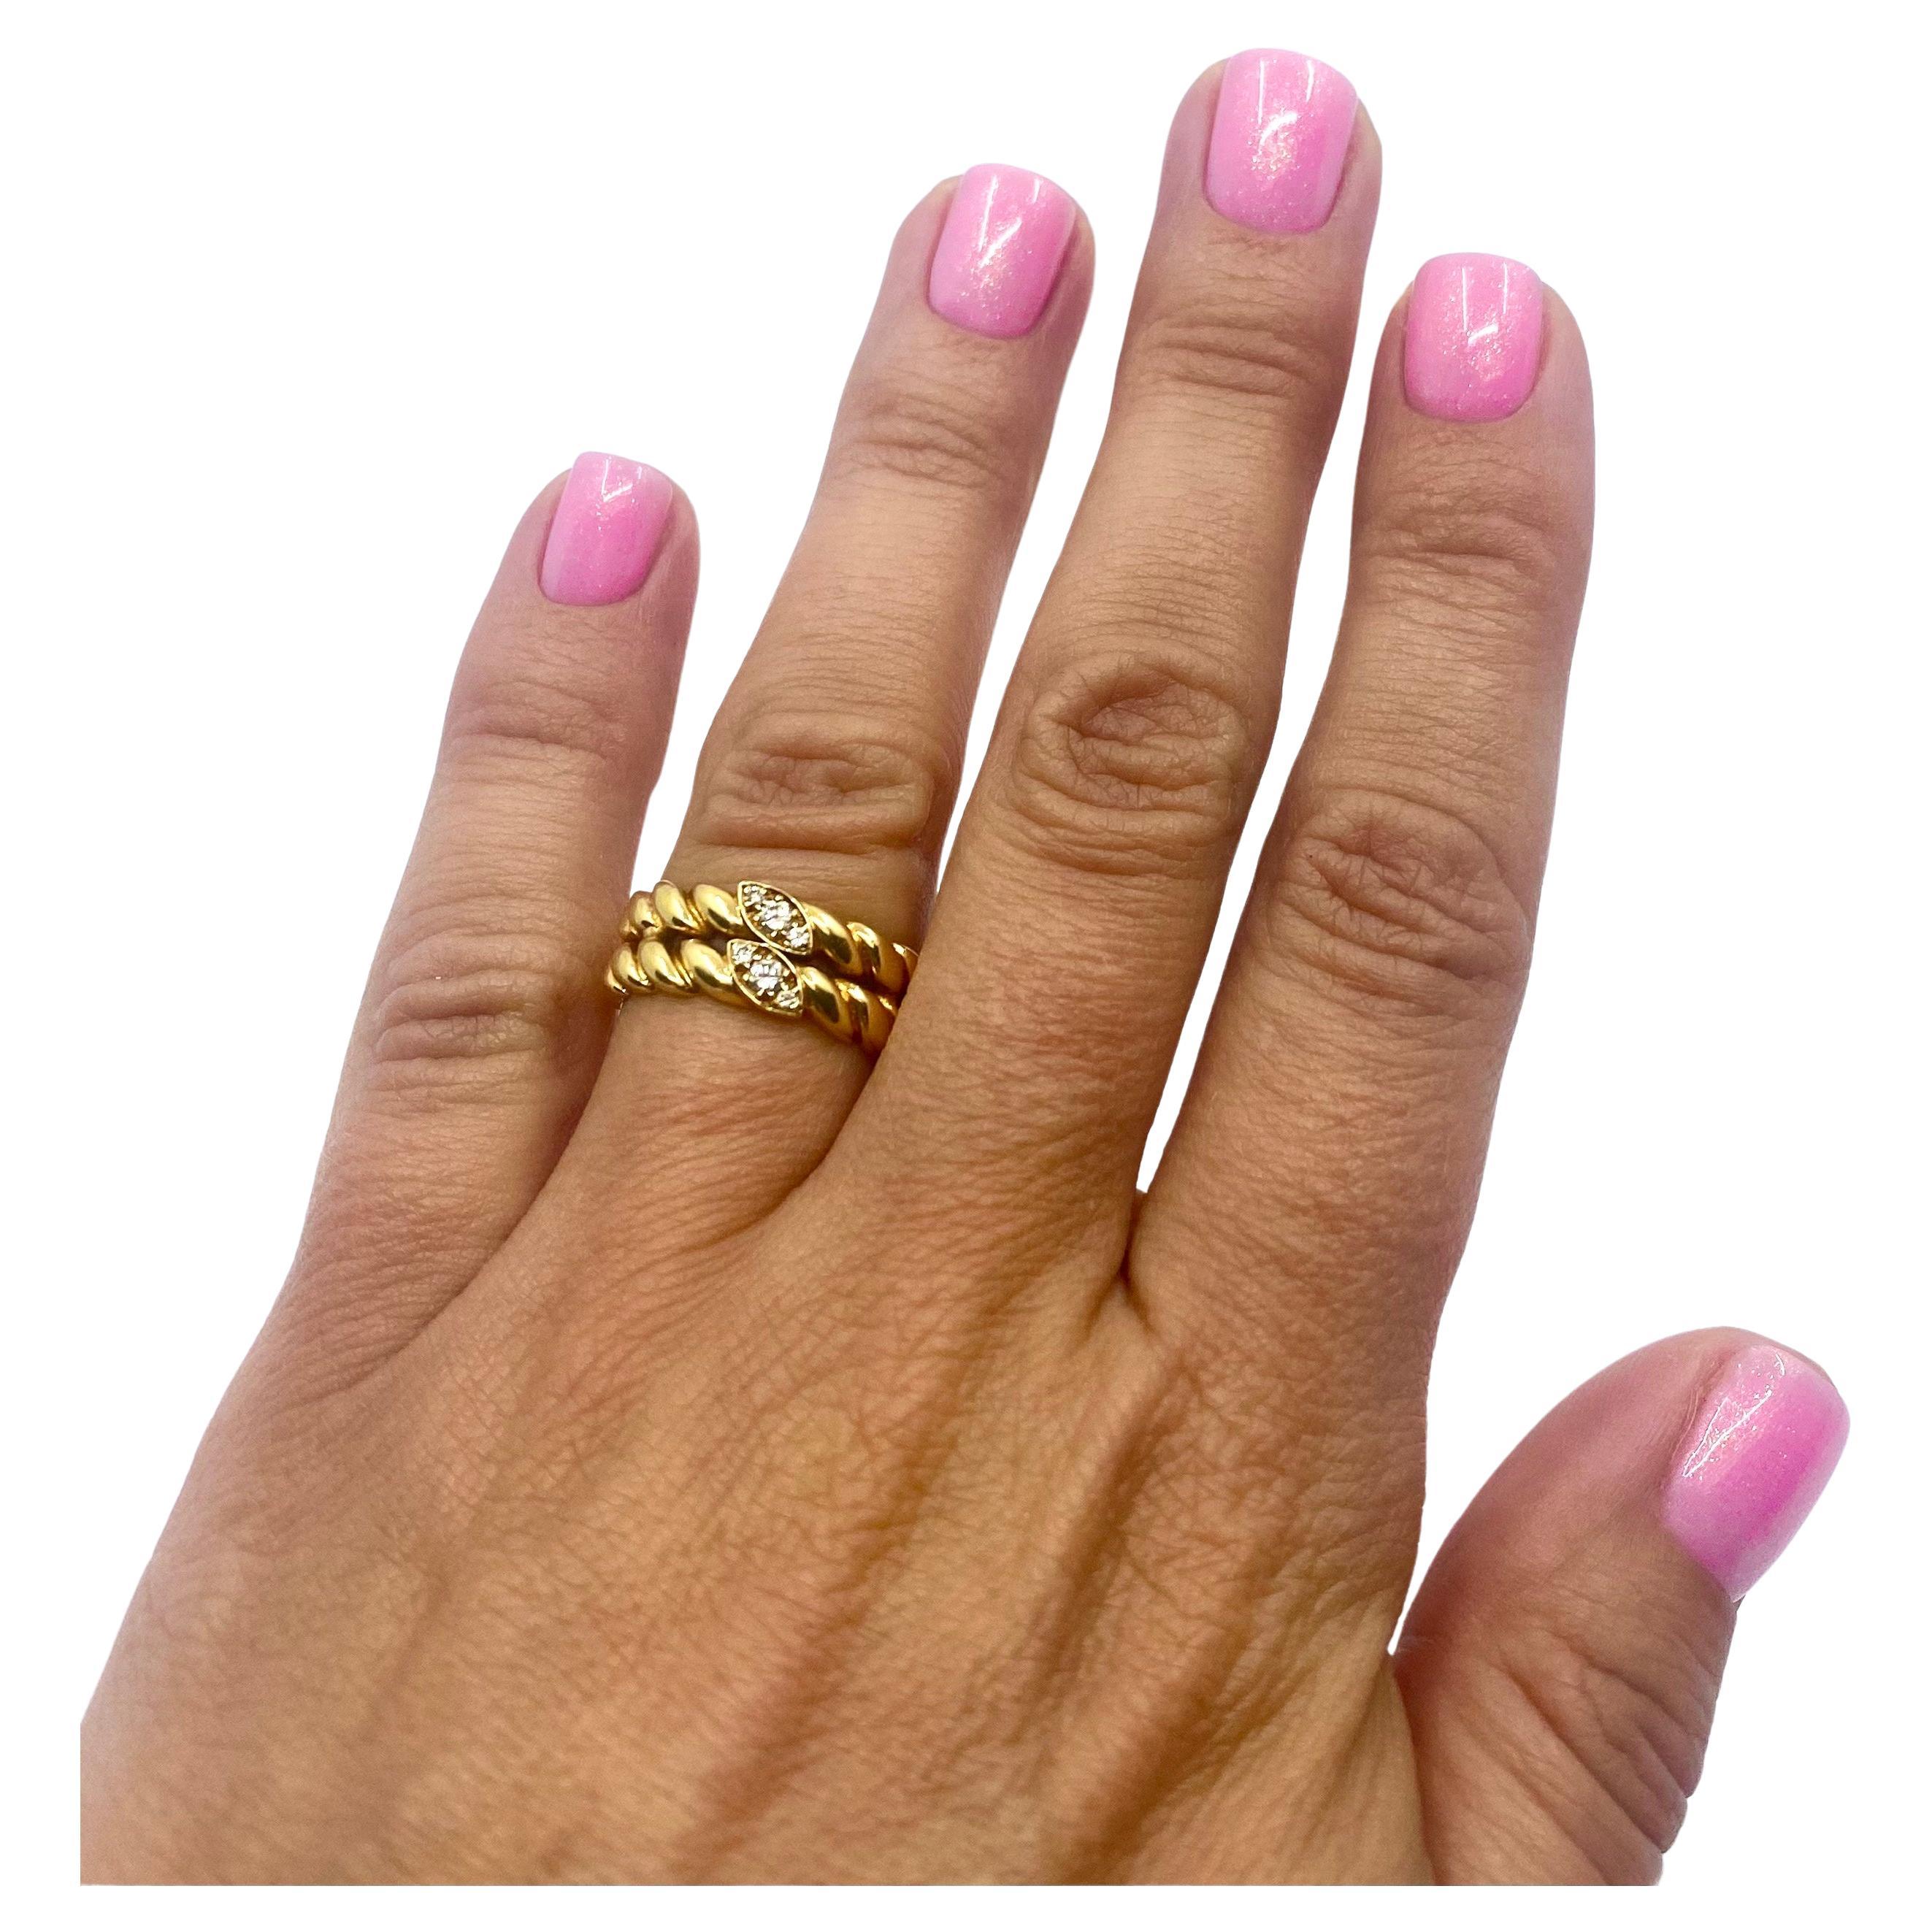 Ein eleganter geflochtener Diamantring von Van Cleef & Arpels aus 18 Karat Gold.u2028Der Ring ist aus einem doppelten Seilband gefertigt, wobei die beiden mittleren Abschnitte des Seils mit Diamanten verziert sind. Das hochglanzpolierte Gold und das